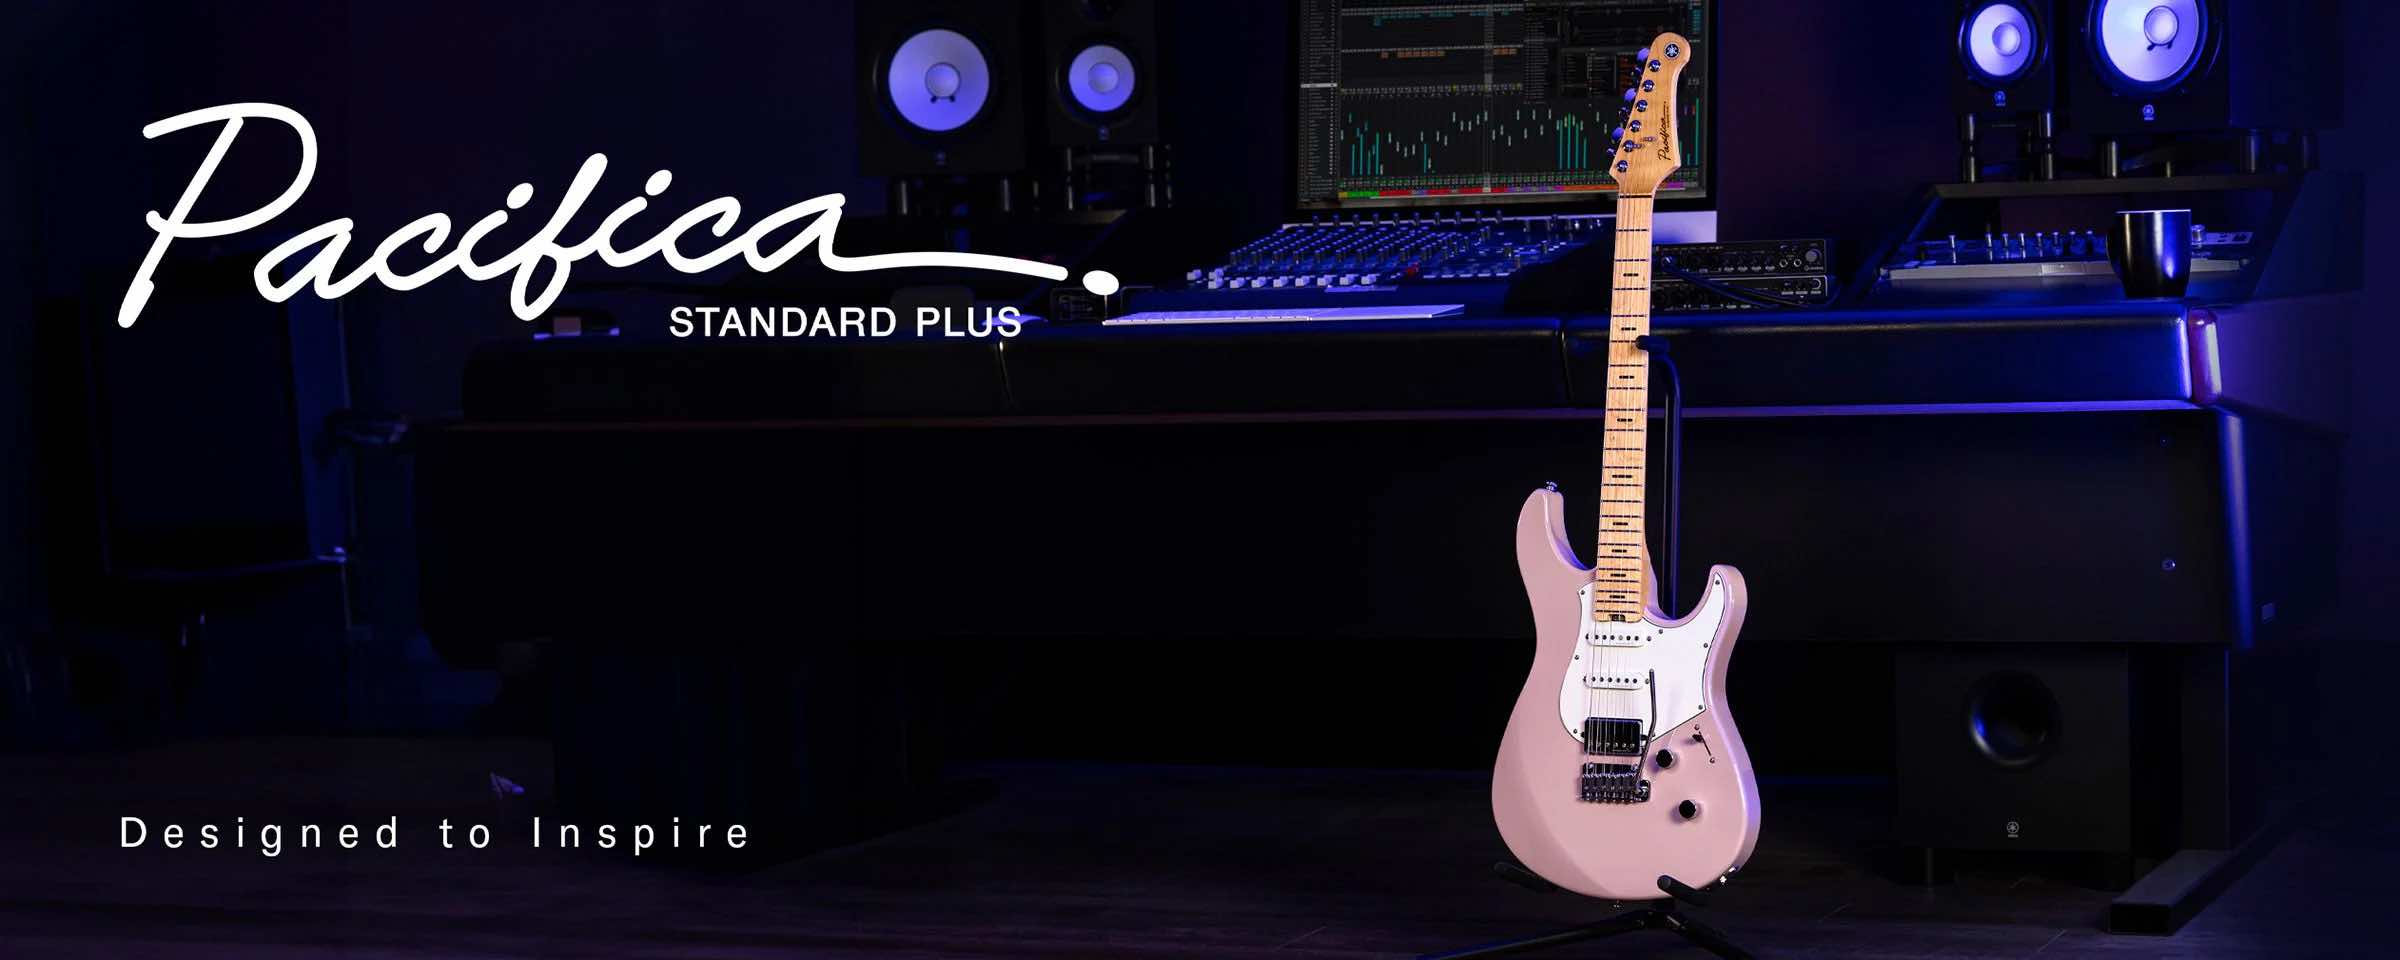 Cada componente de las guitarras Pacifica Standard Plus se selecciona con precisión para garantizar la máxima calidad y durabilidad.